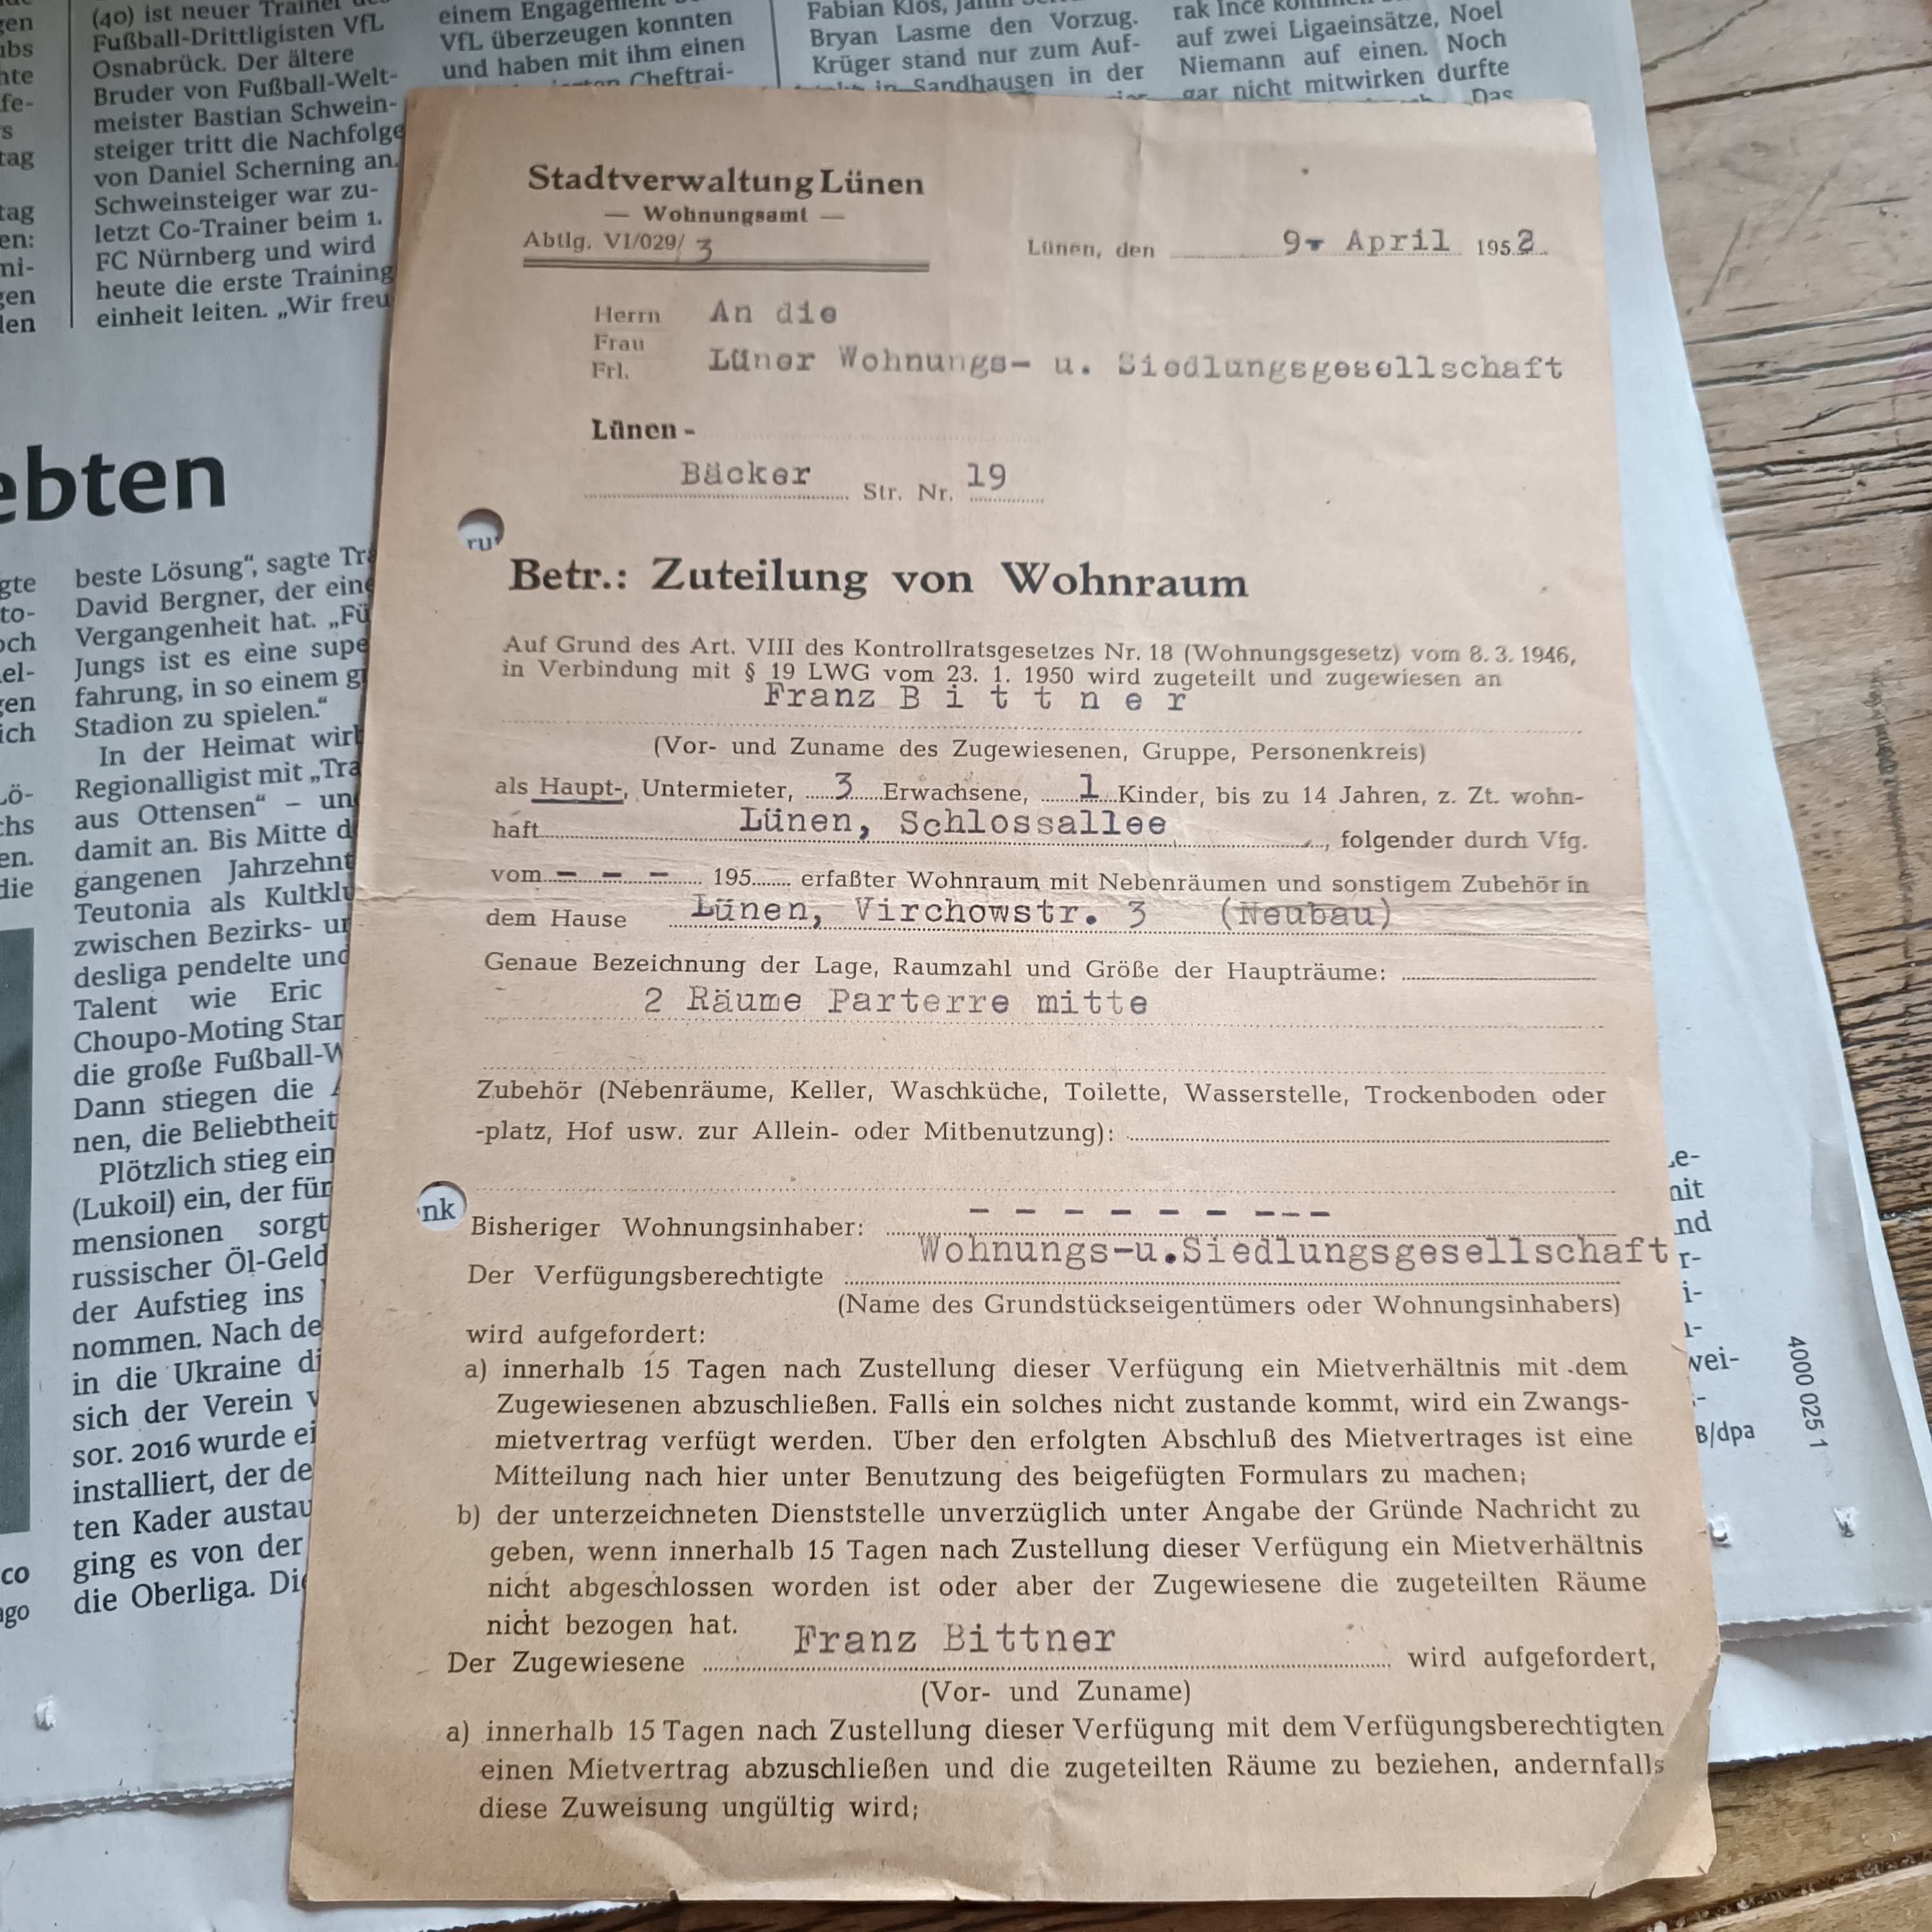 Zuteilung von Wohnraum; Datum 09. April 1952